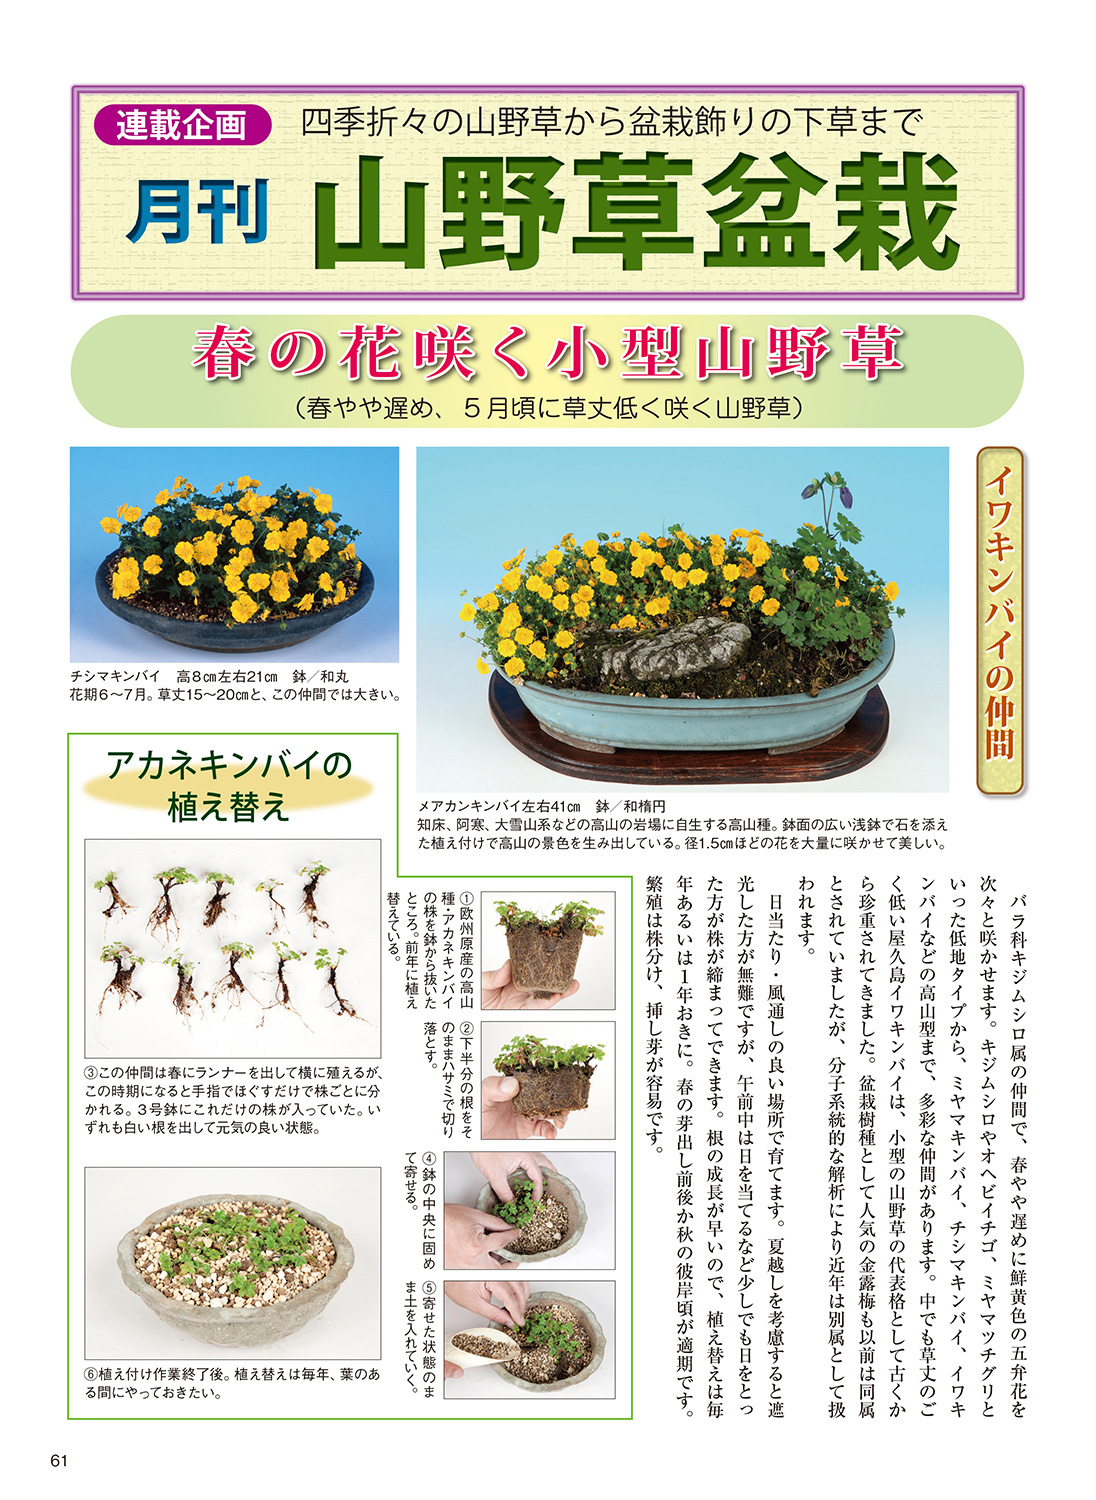 月刊 近代盆栽 22年4月号 盆栽 盆栽書籍 盆栽鉢の通販 近代出版